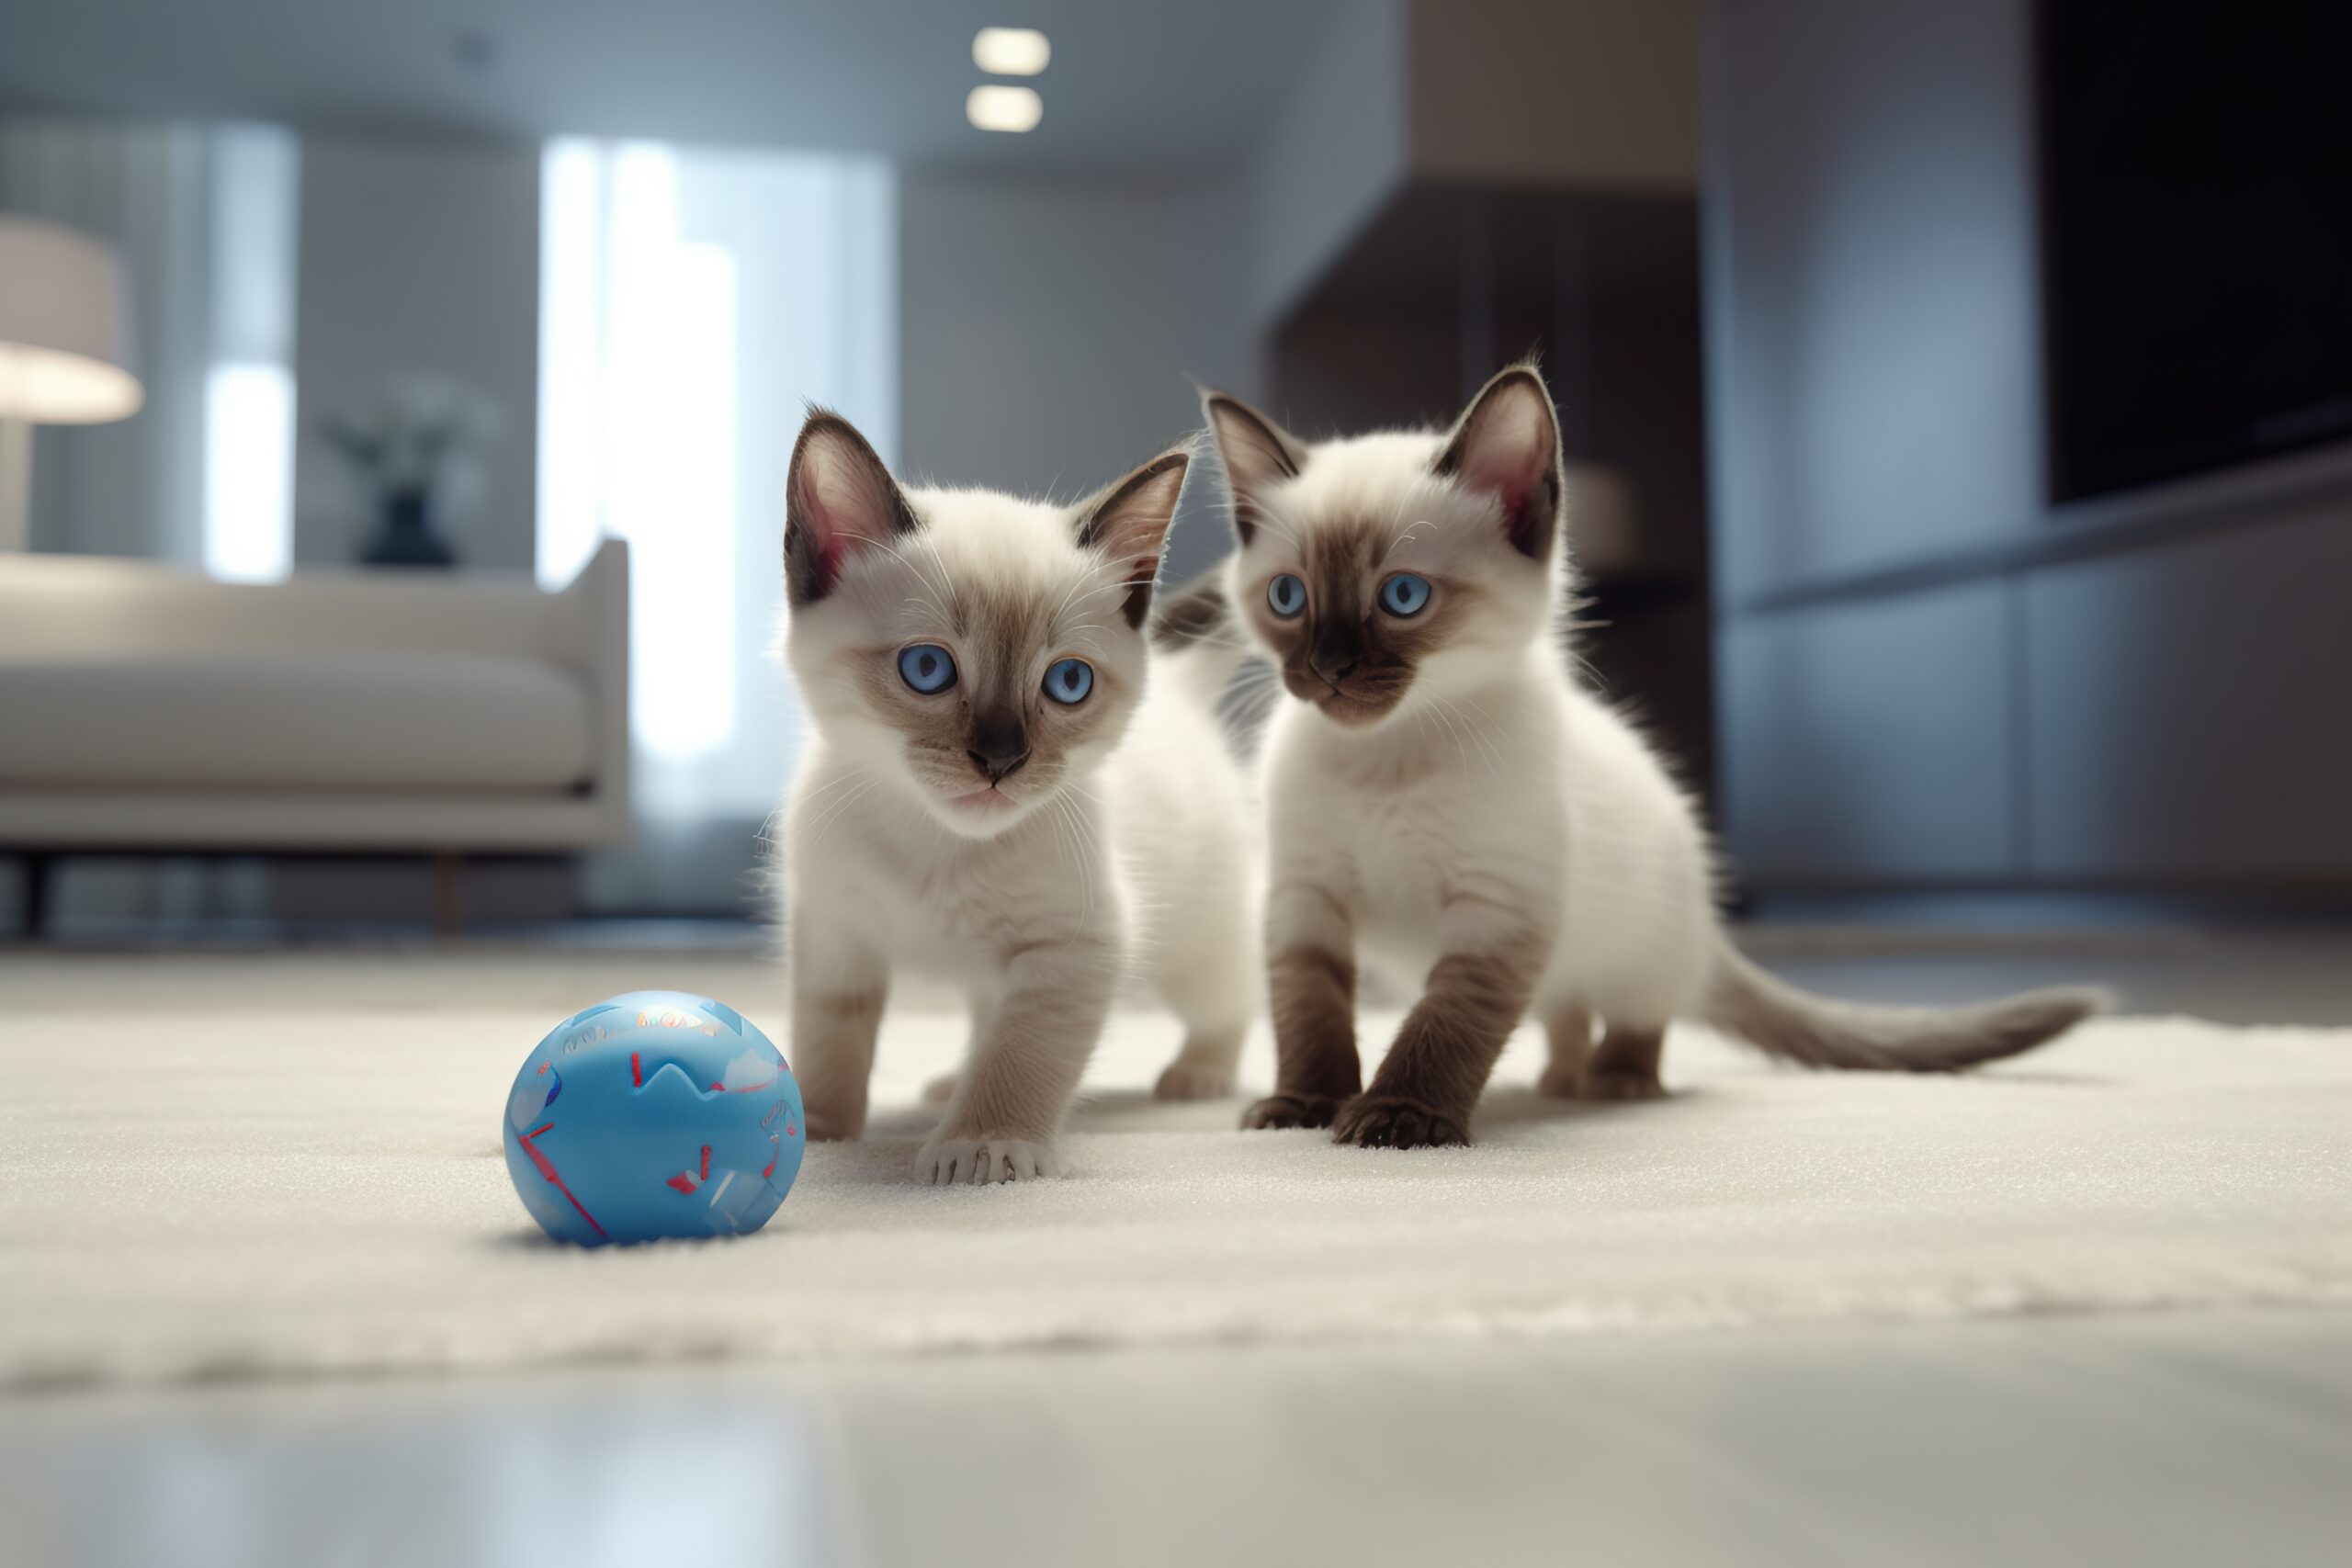 immagine di gatti siamesi che giocano e stimolano intelligenza e curiosità